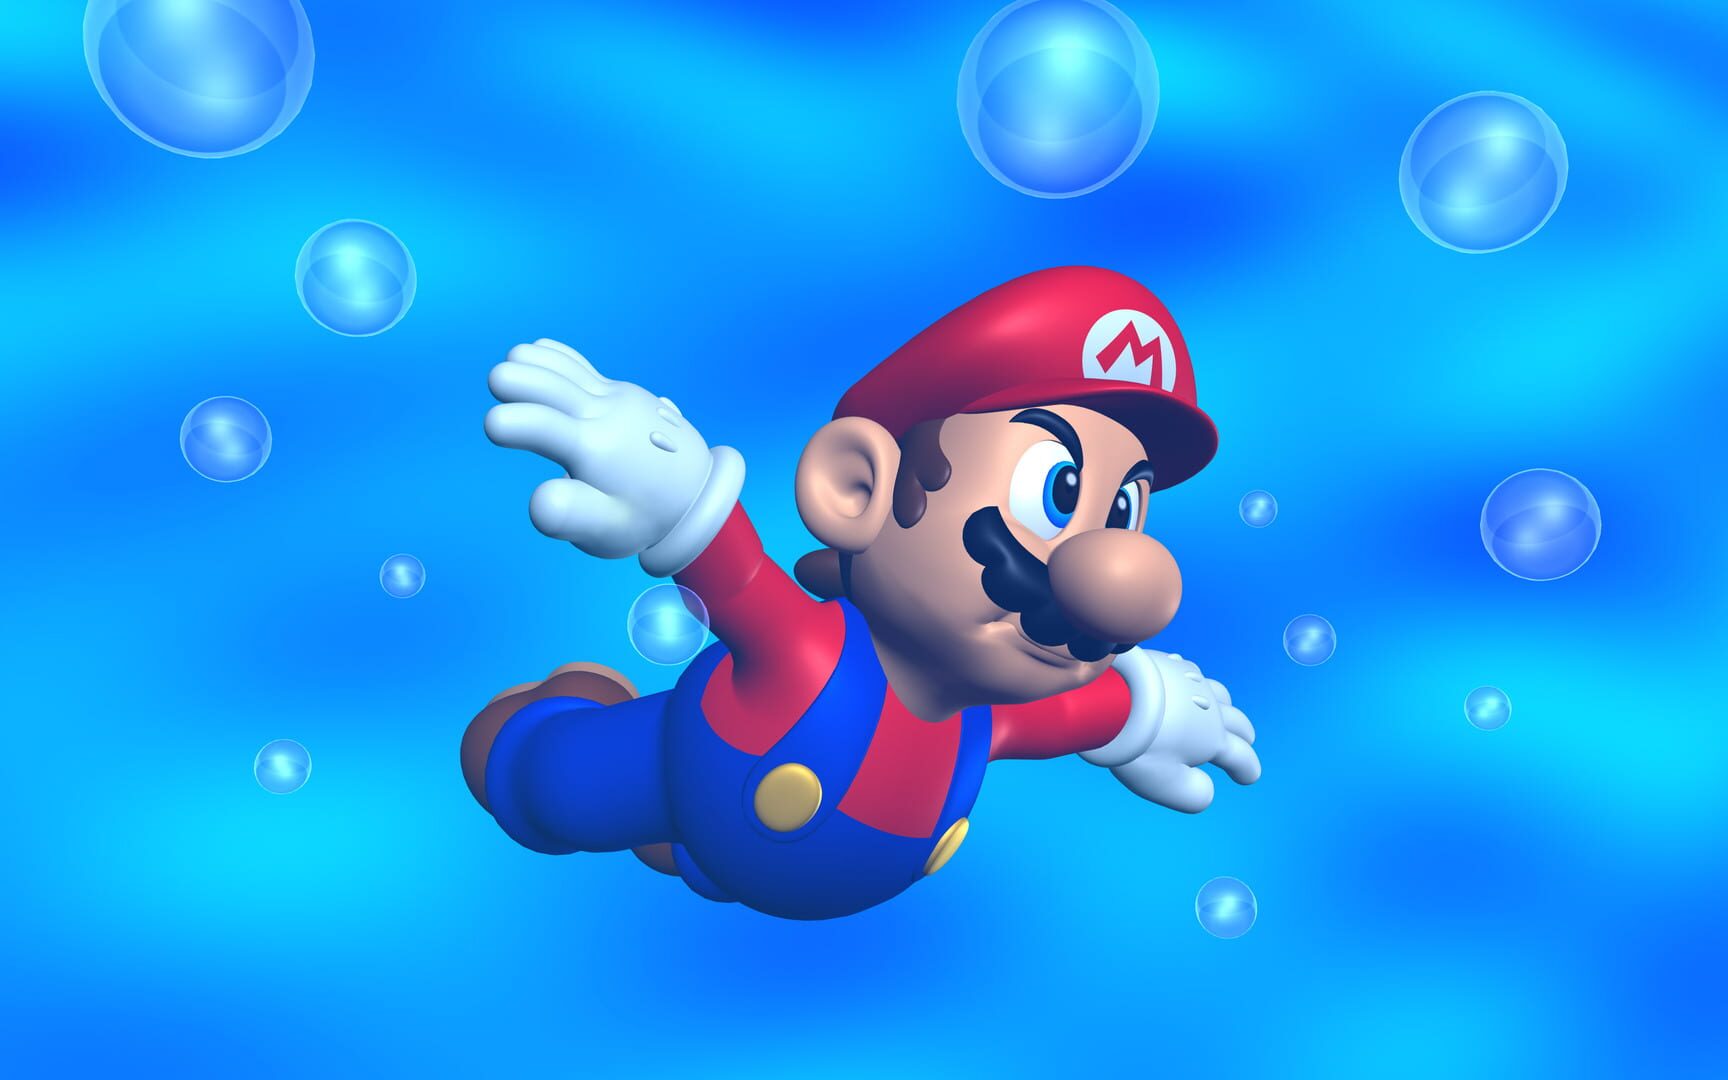 Arte - Super Mario 64